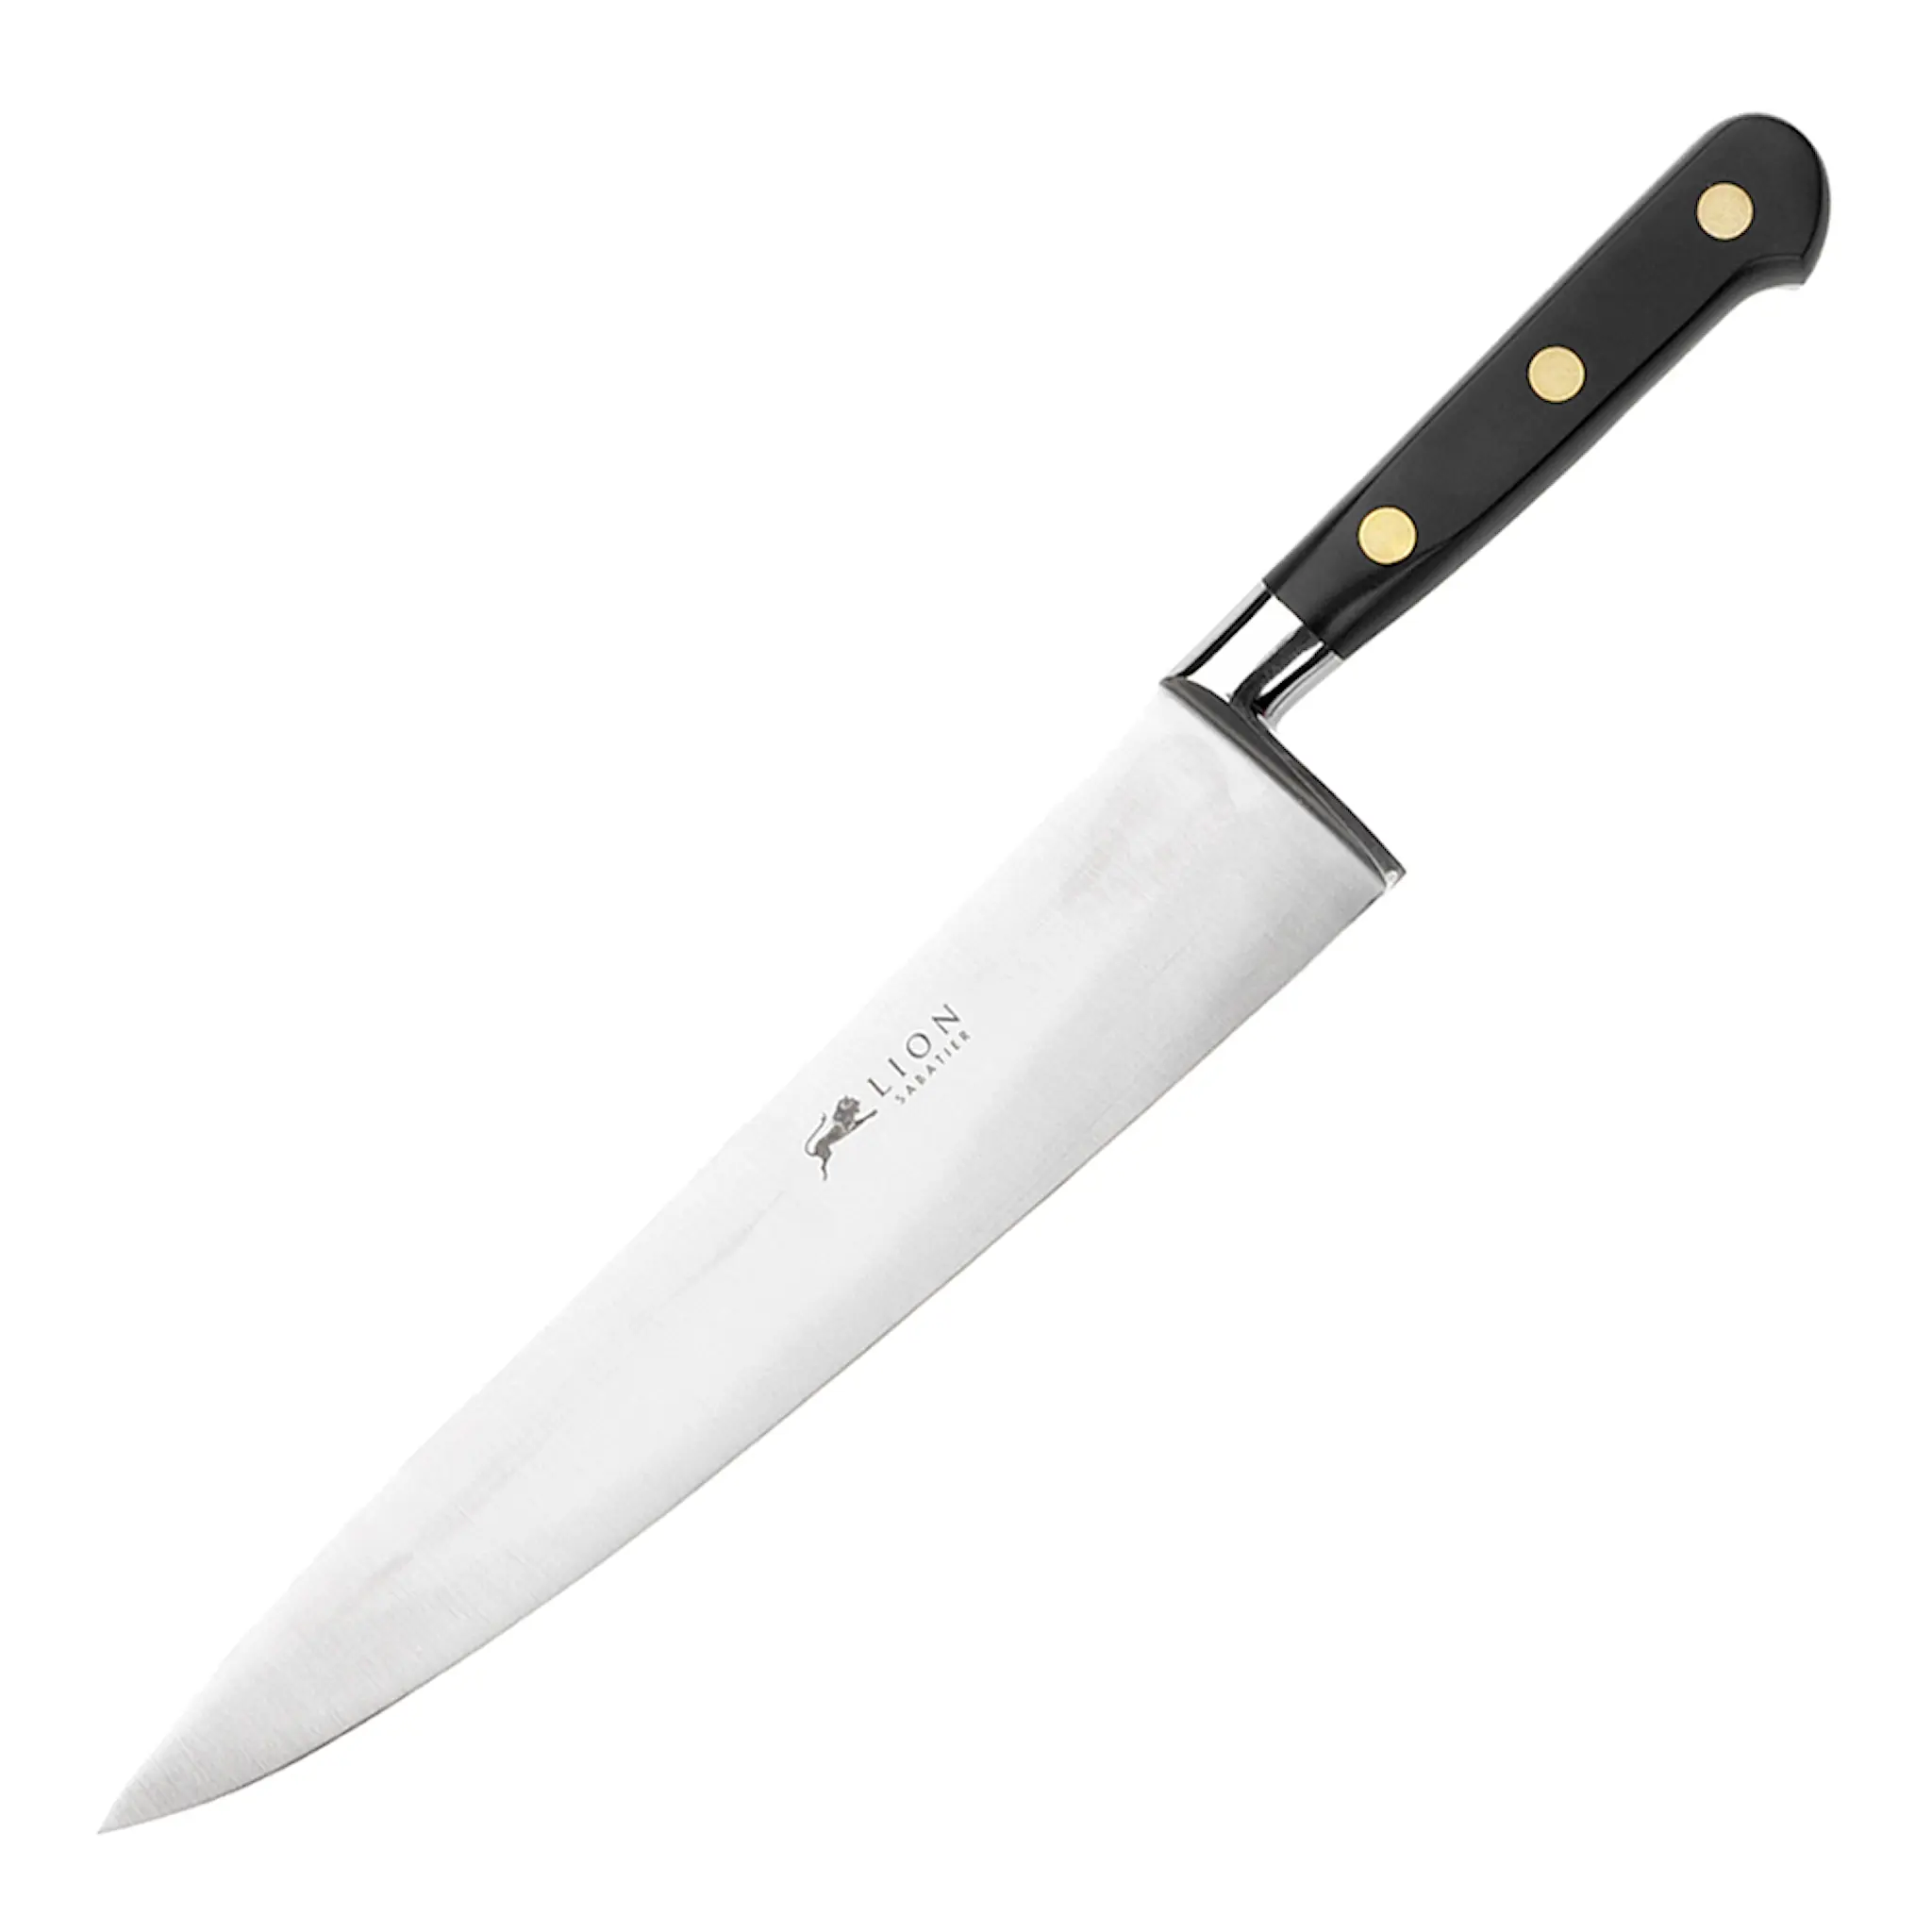 Sabatier Ideal Kockkniv 20 cm Stål/svart